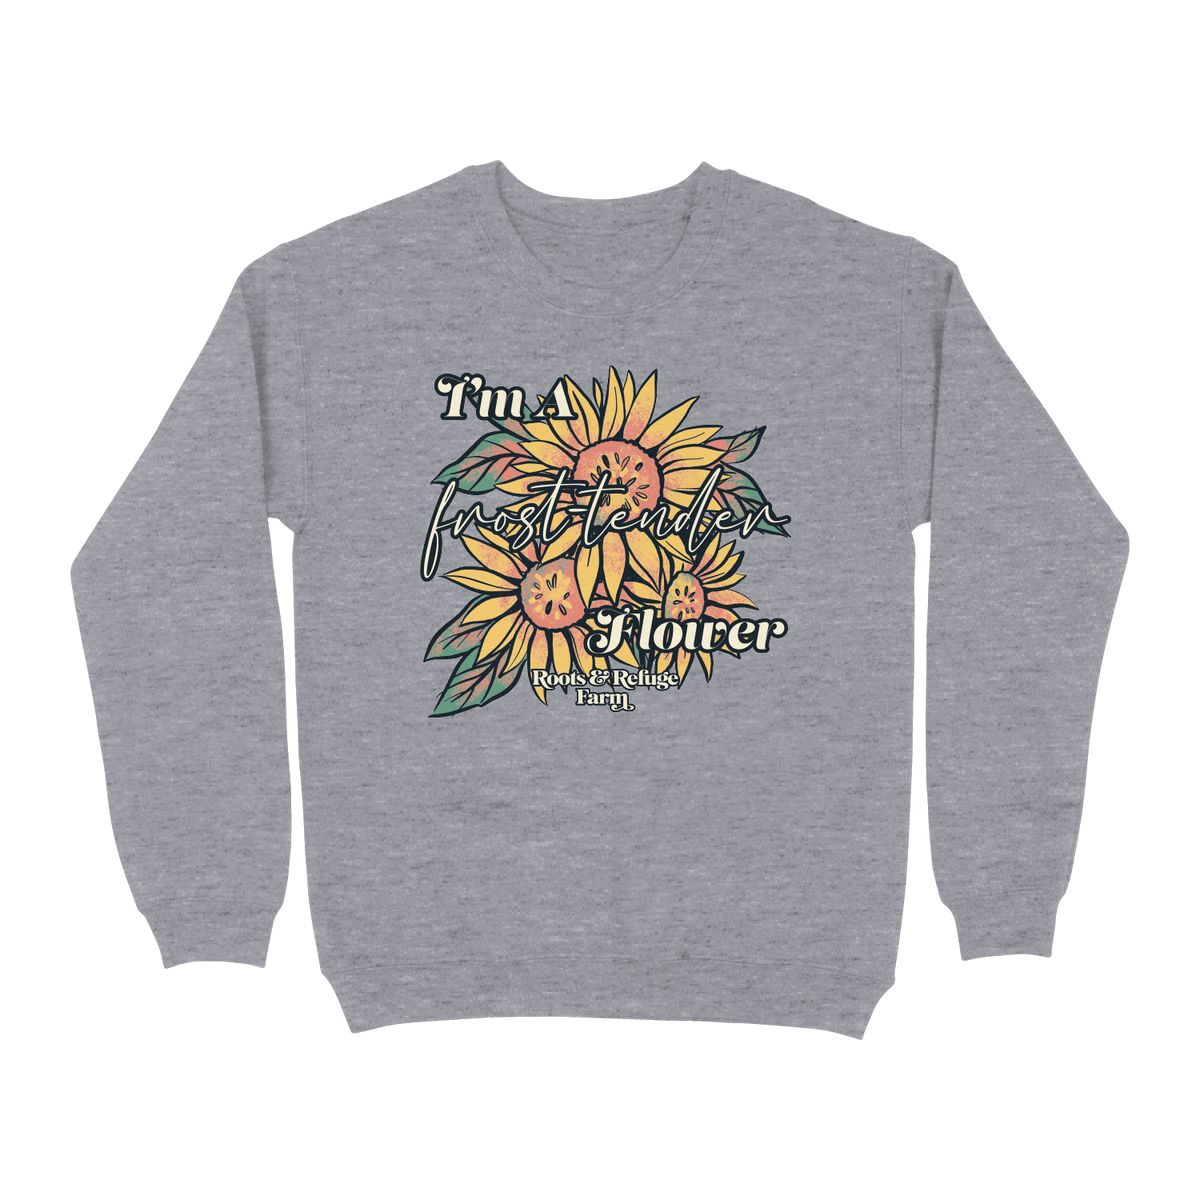 Sweatshirt Round Neck LS Flowers